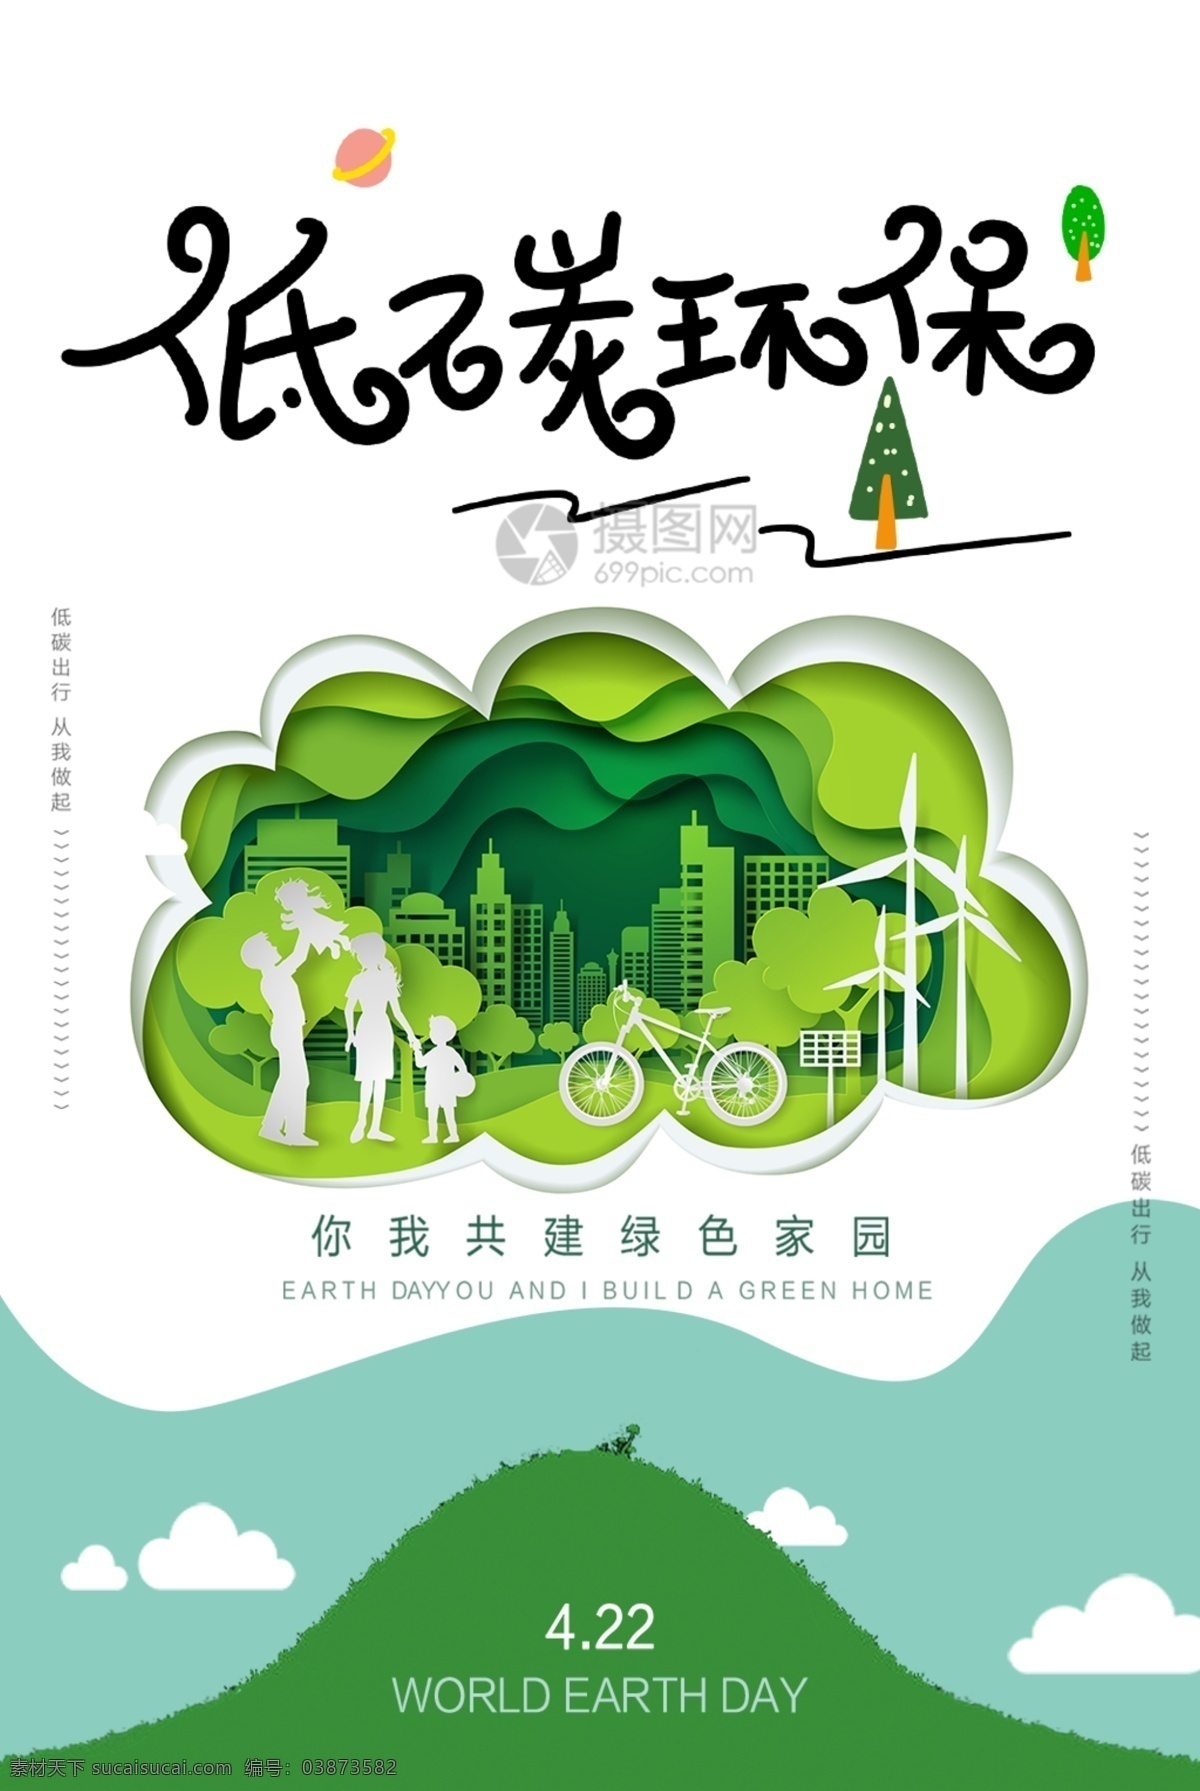 简约 低 碳 环保 宣传海报 低碳 绿色出行 绿色 海报 剪纸风 低碳环保